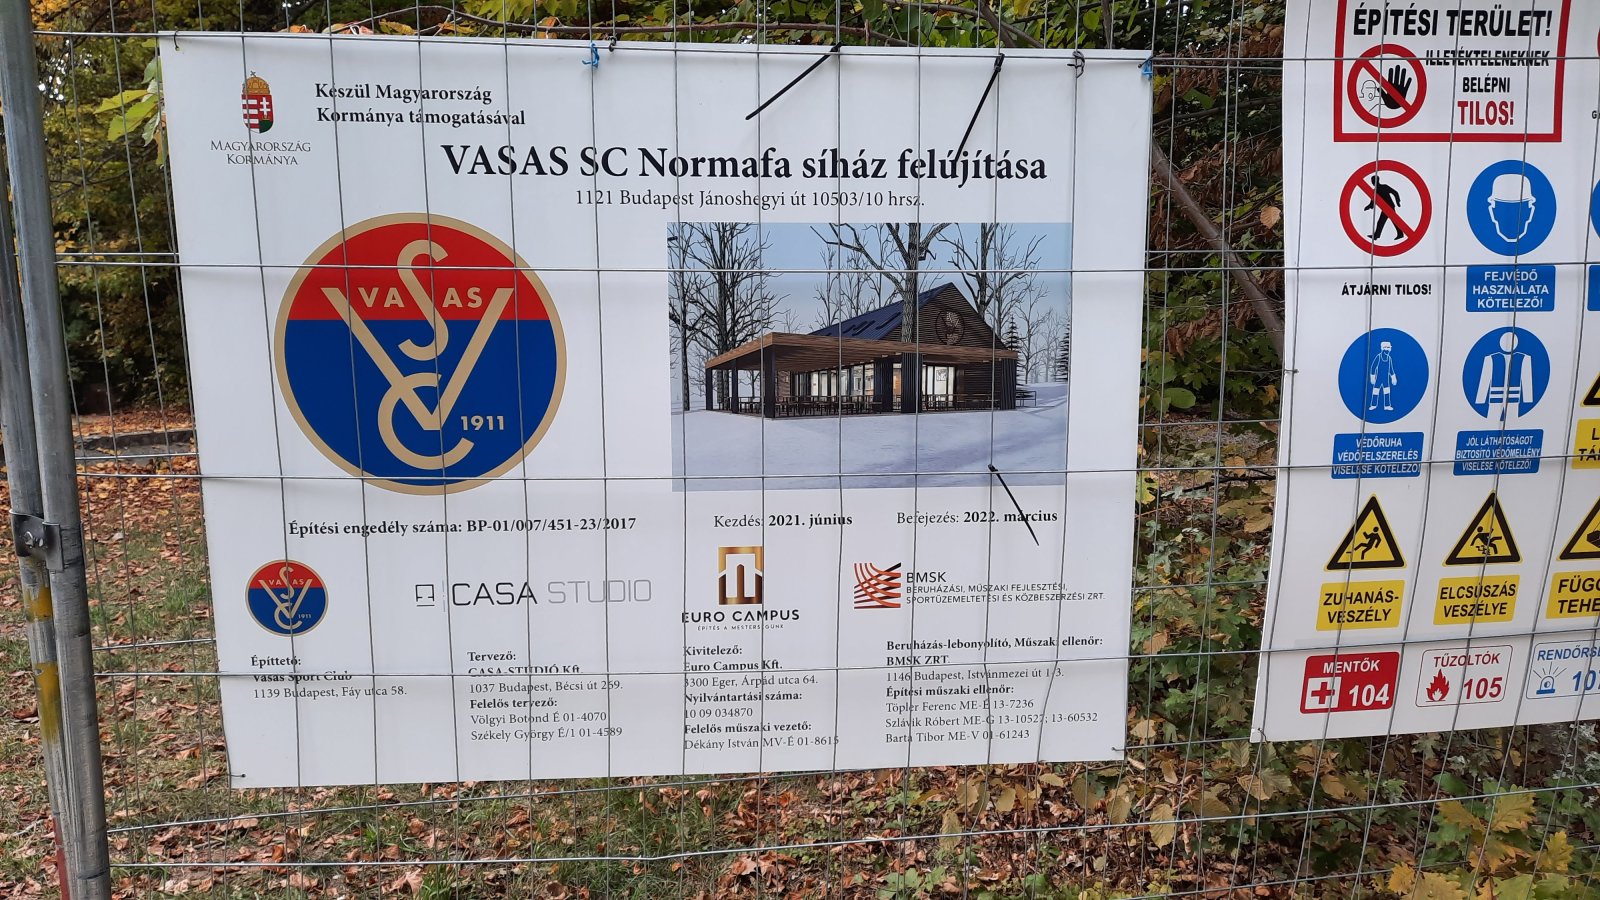 Már javában folyik a VASAS síház felújítása